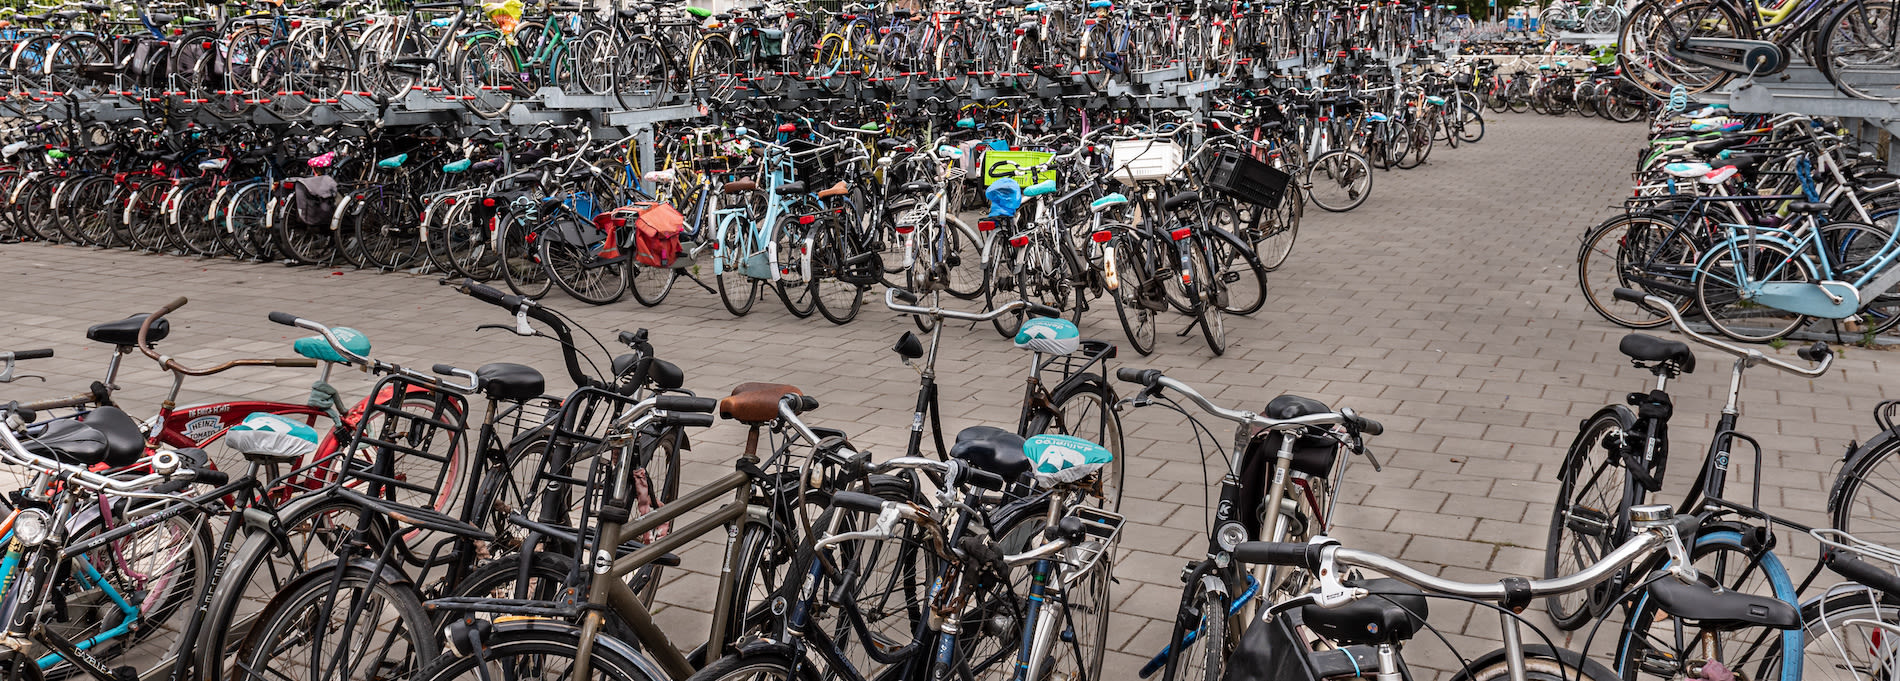 Parkeerplaats voor fietsen in Utrecht. Foto: Adobe Stock / Steve